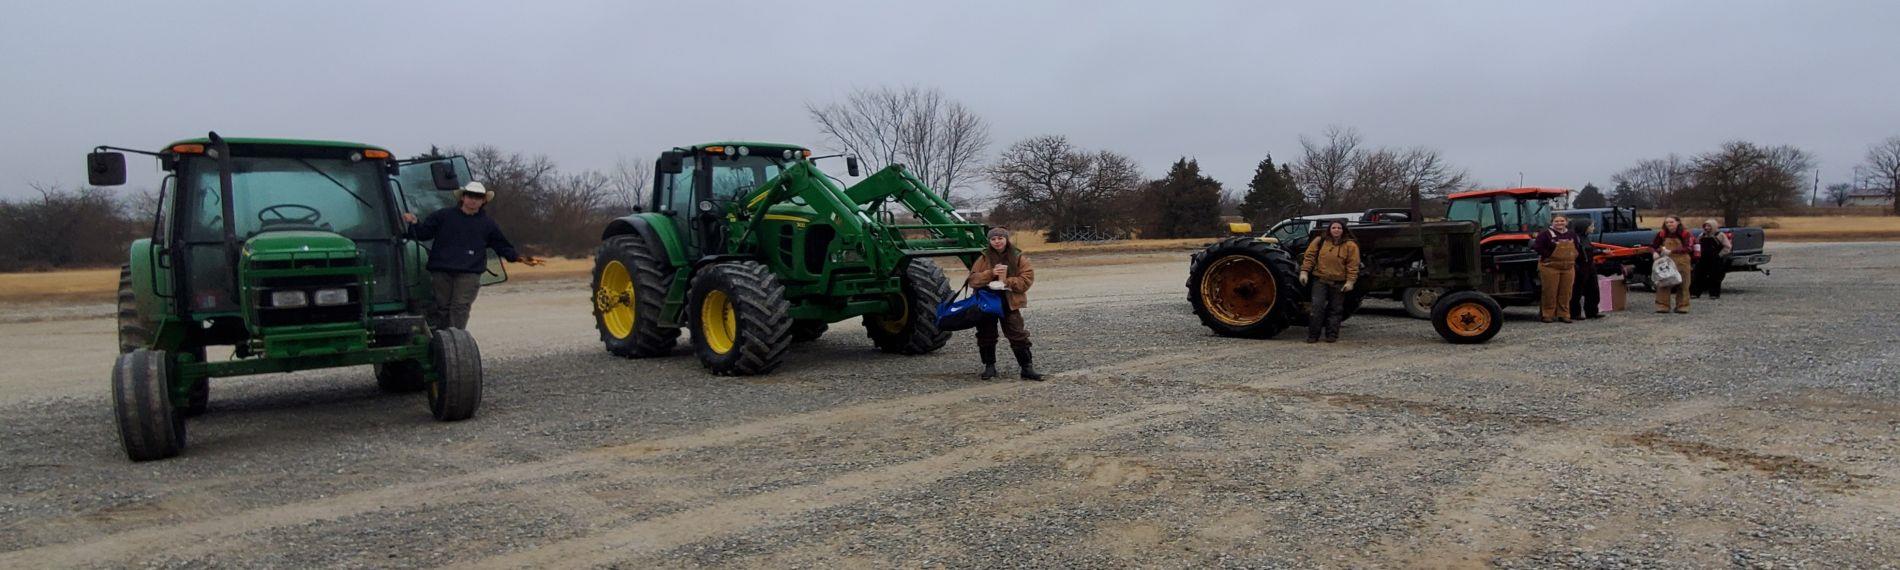 ffa tractors